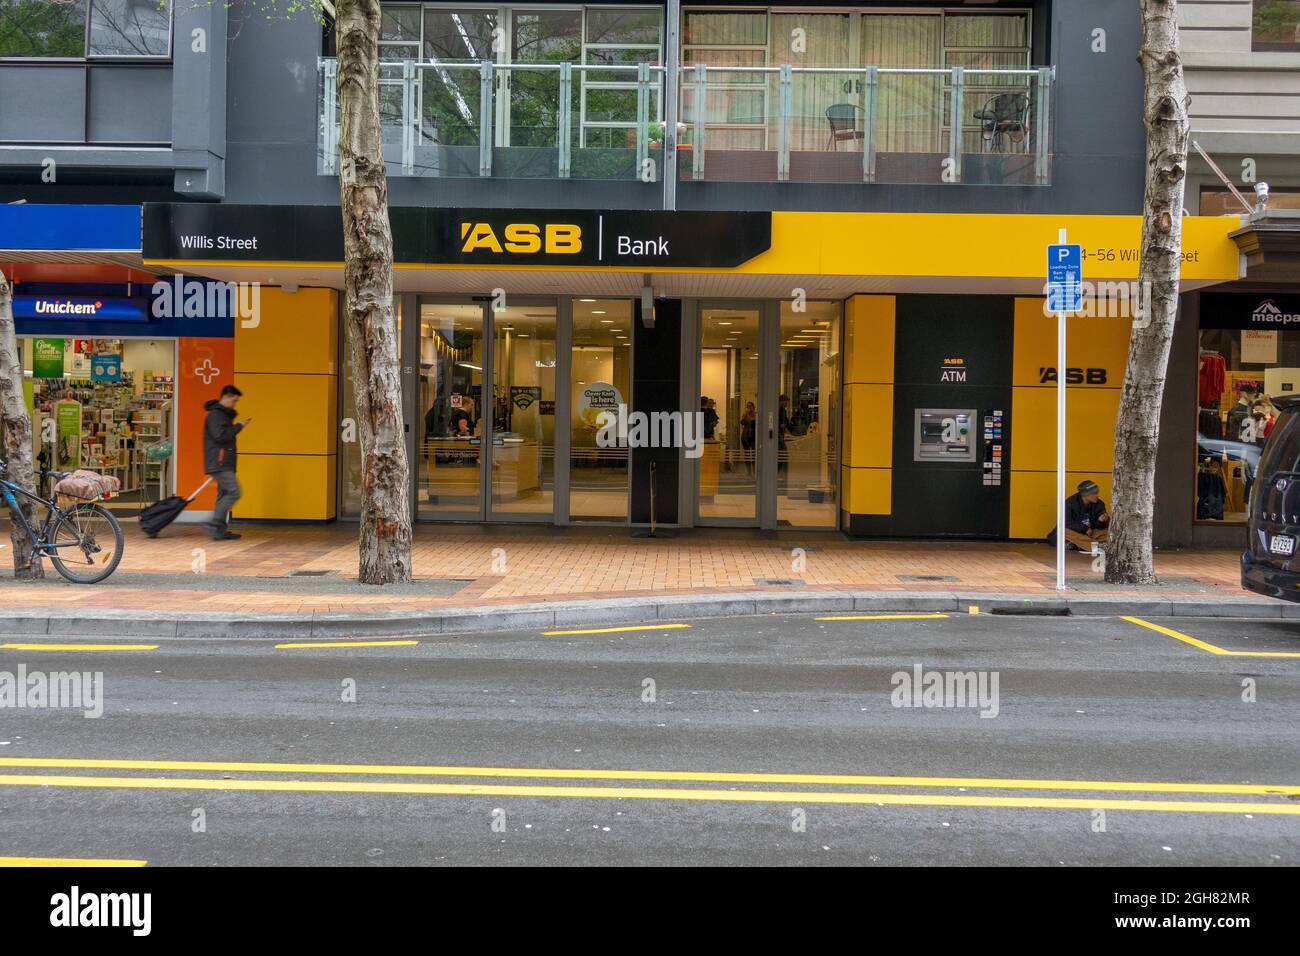 ASB Bank su Willis Street Wellington Nuova Zelanda di proprietà della Commonwealth Bank of Australia (Commonwealth Bank) Foto Stock